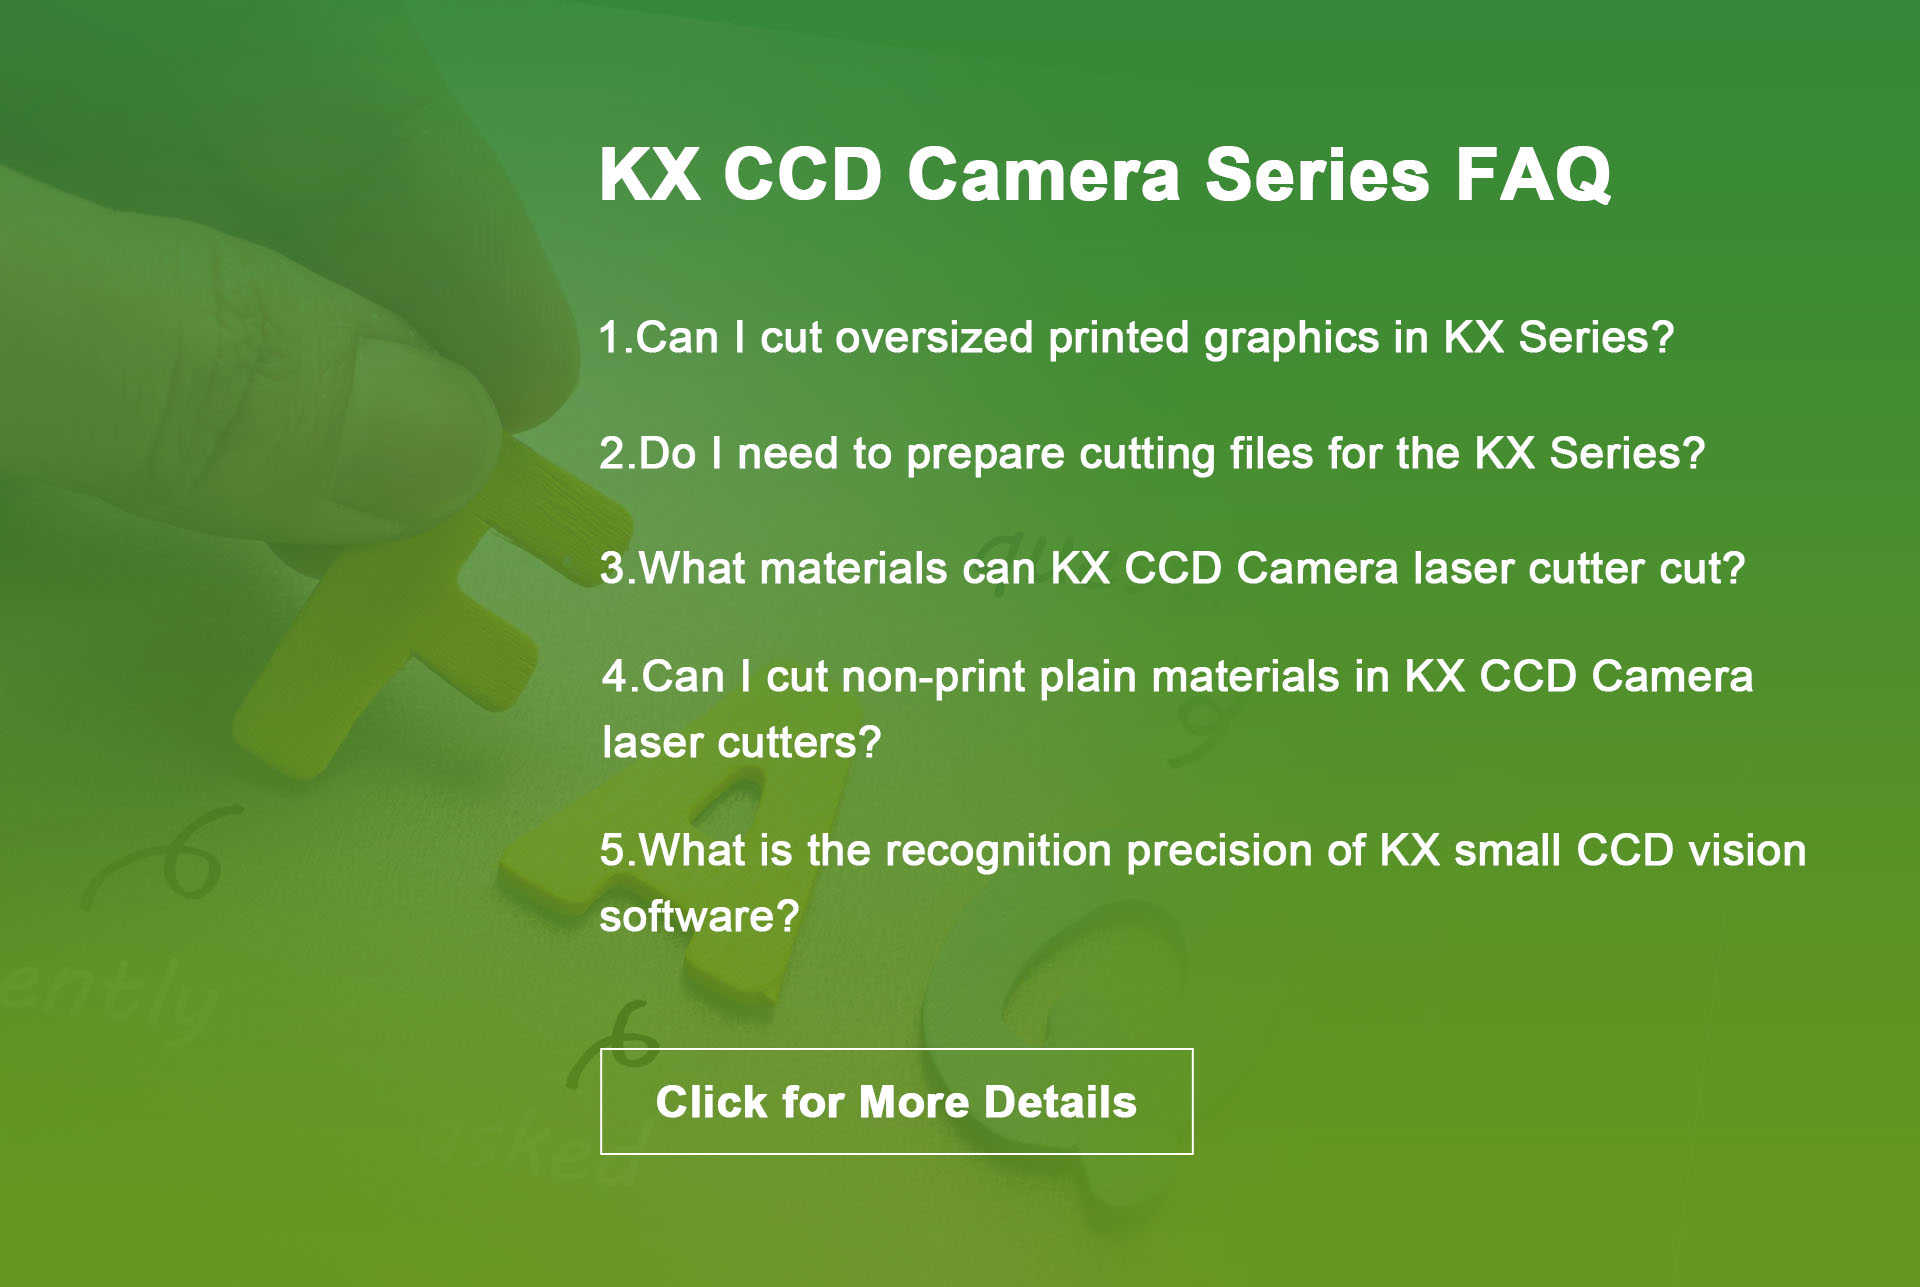 kx ccd camera series faq